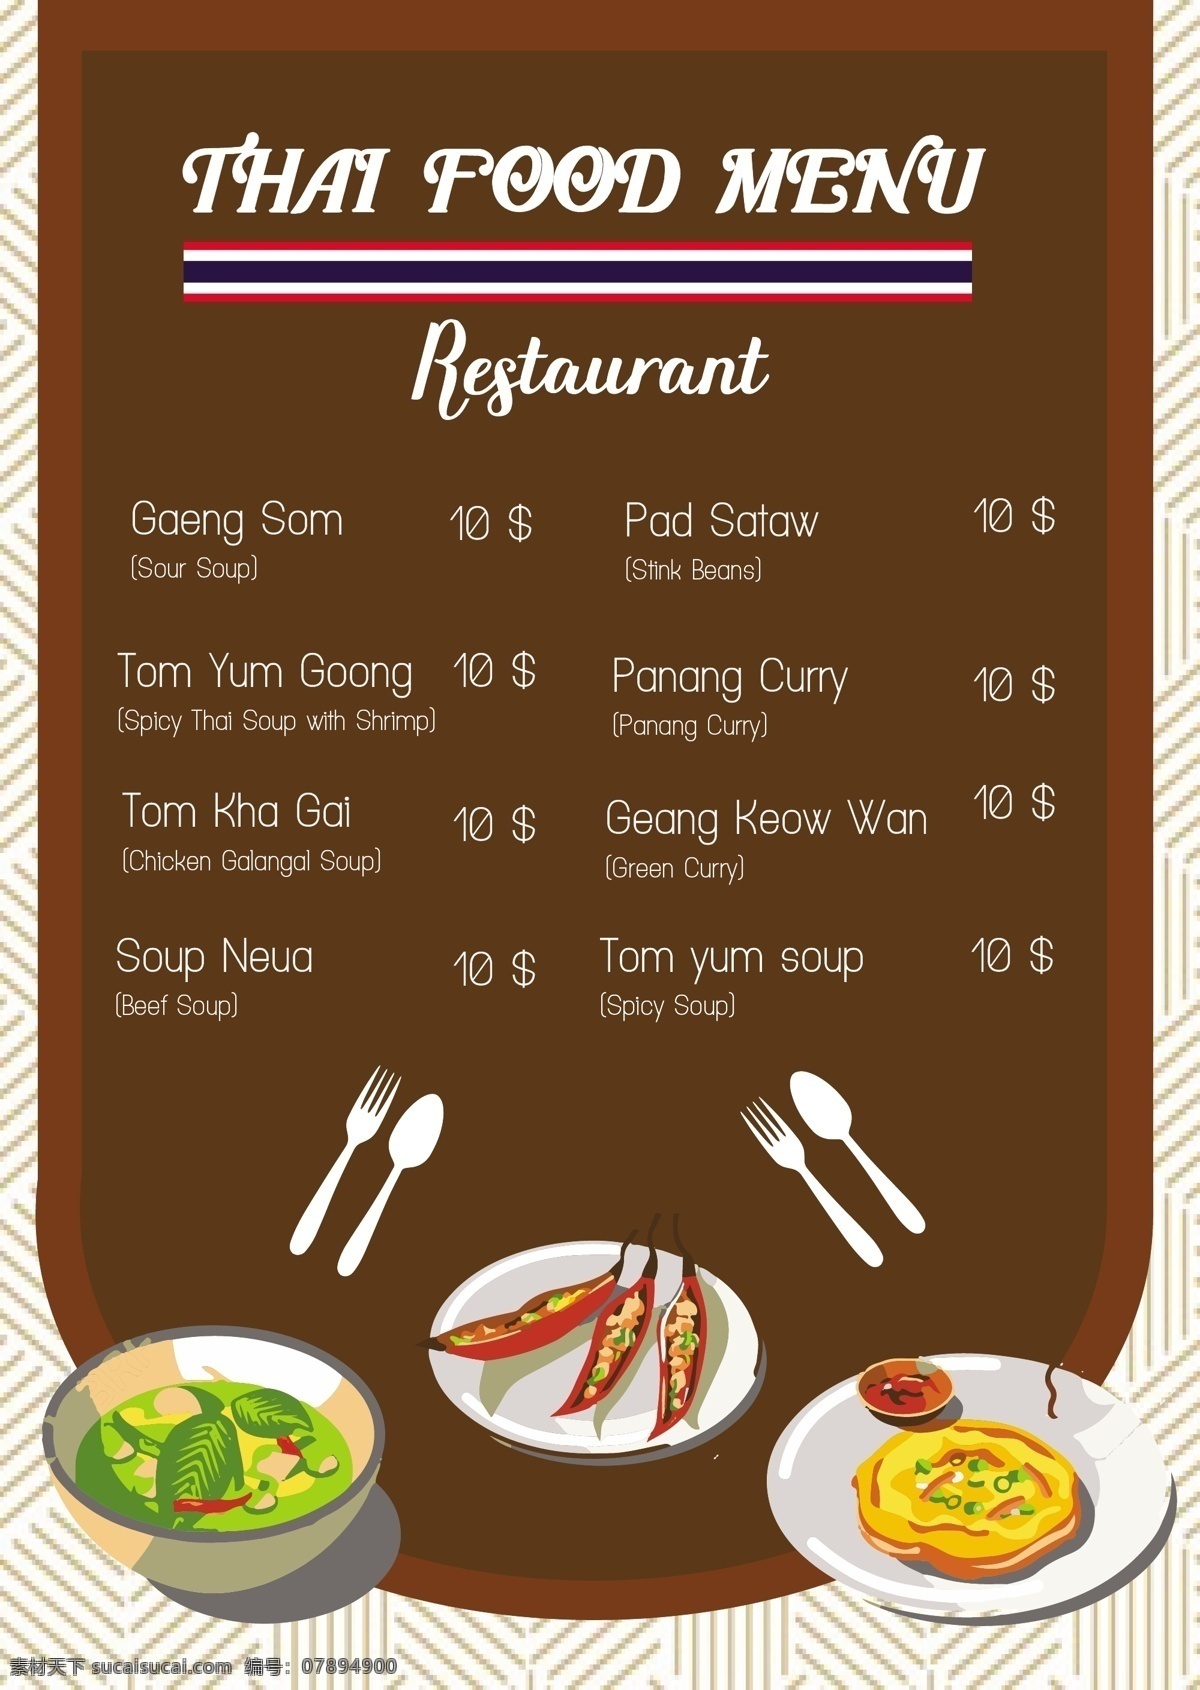 泰国 菜单 价格表 餐具 价钱 手绘 餐厅 餐饮 美味的食物 蔬菜的名称